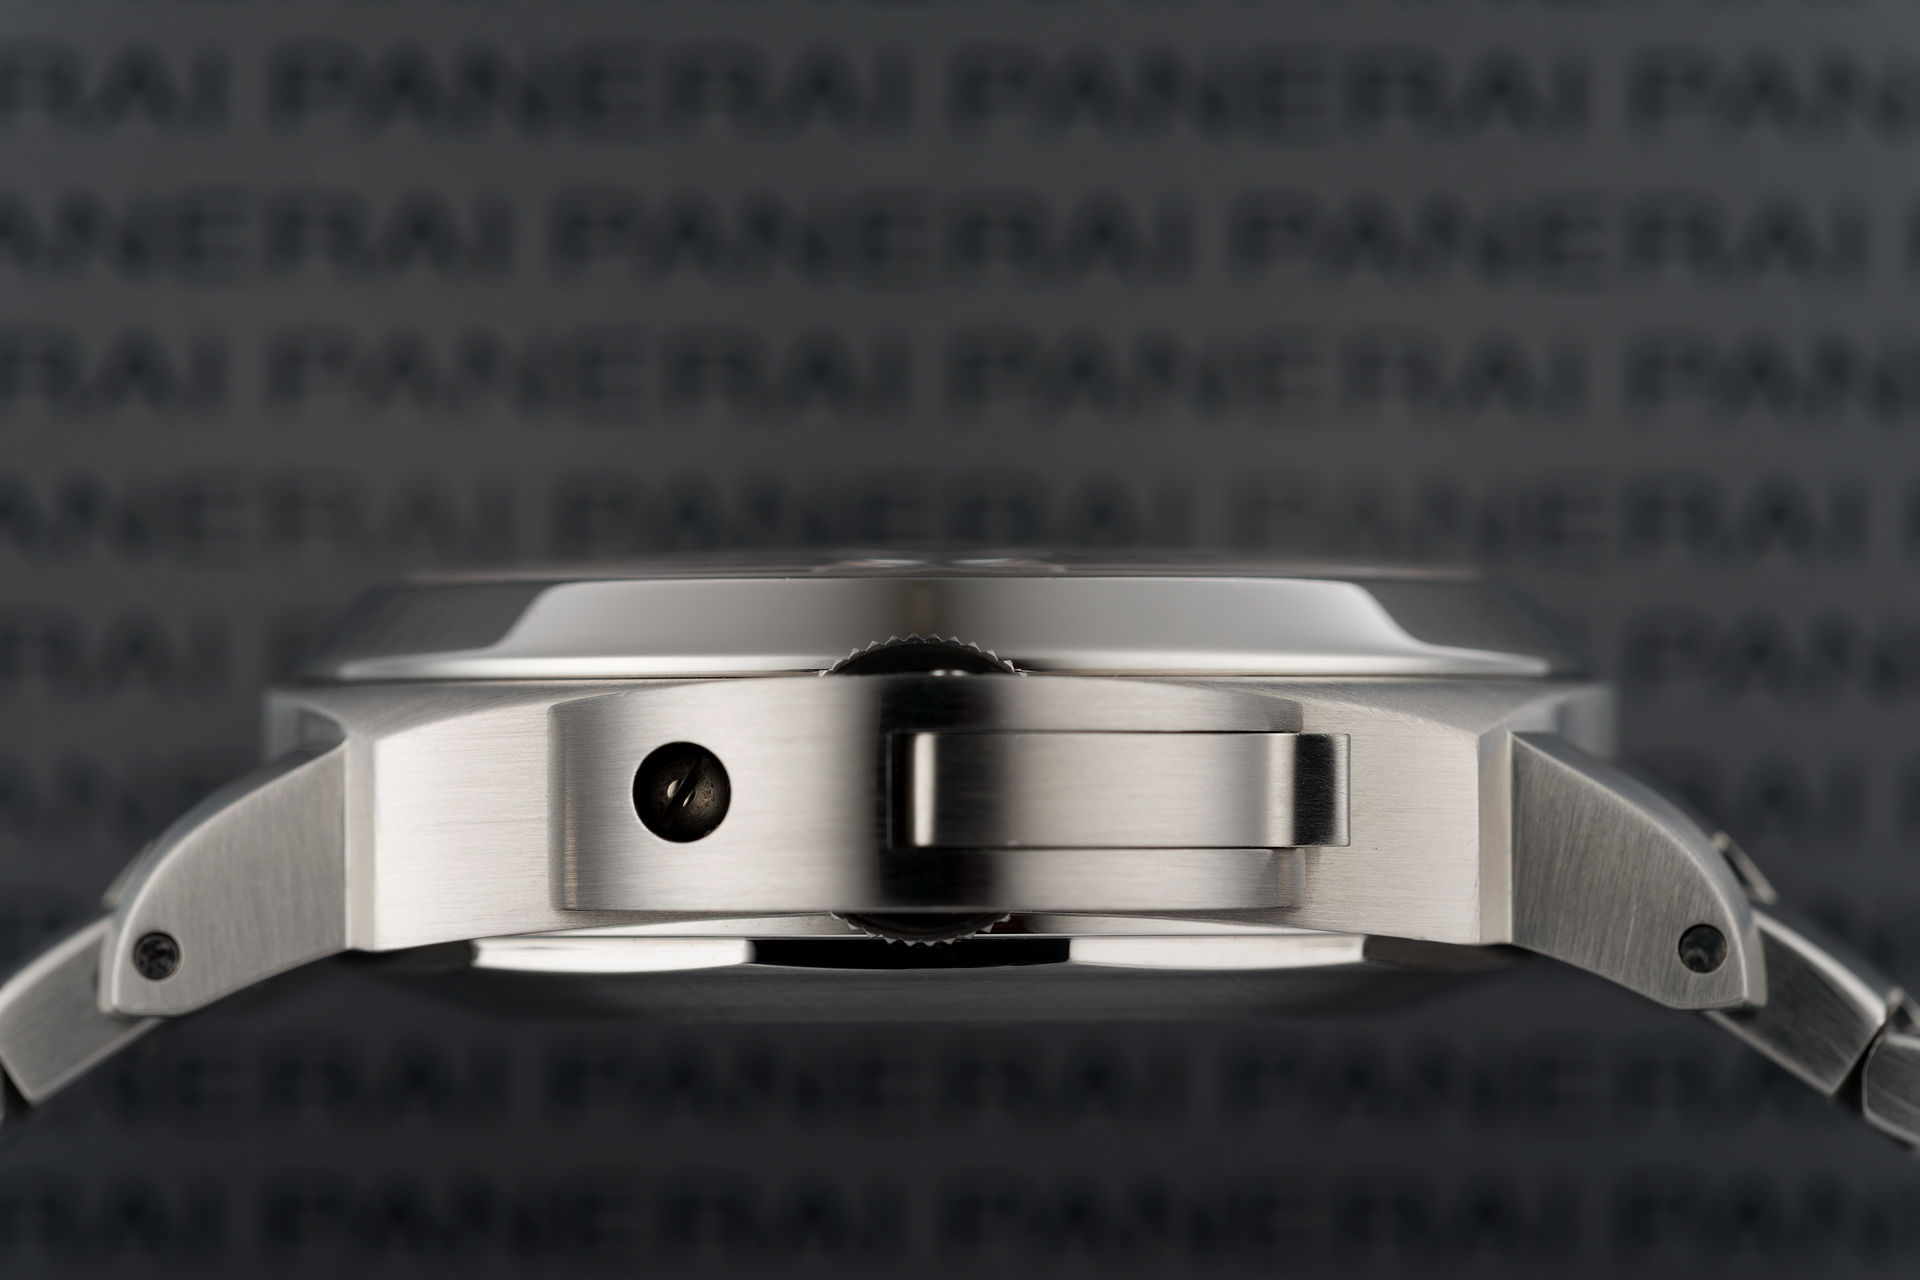 ref PAM 299 | 44mm Box & Papers | Panerai Luminor Marina